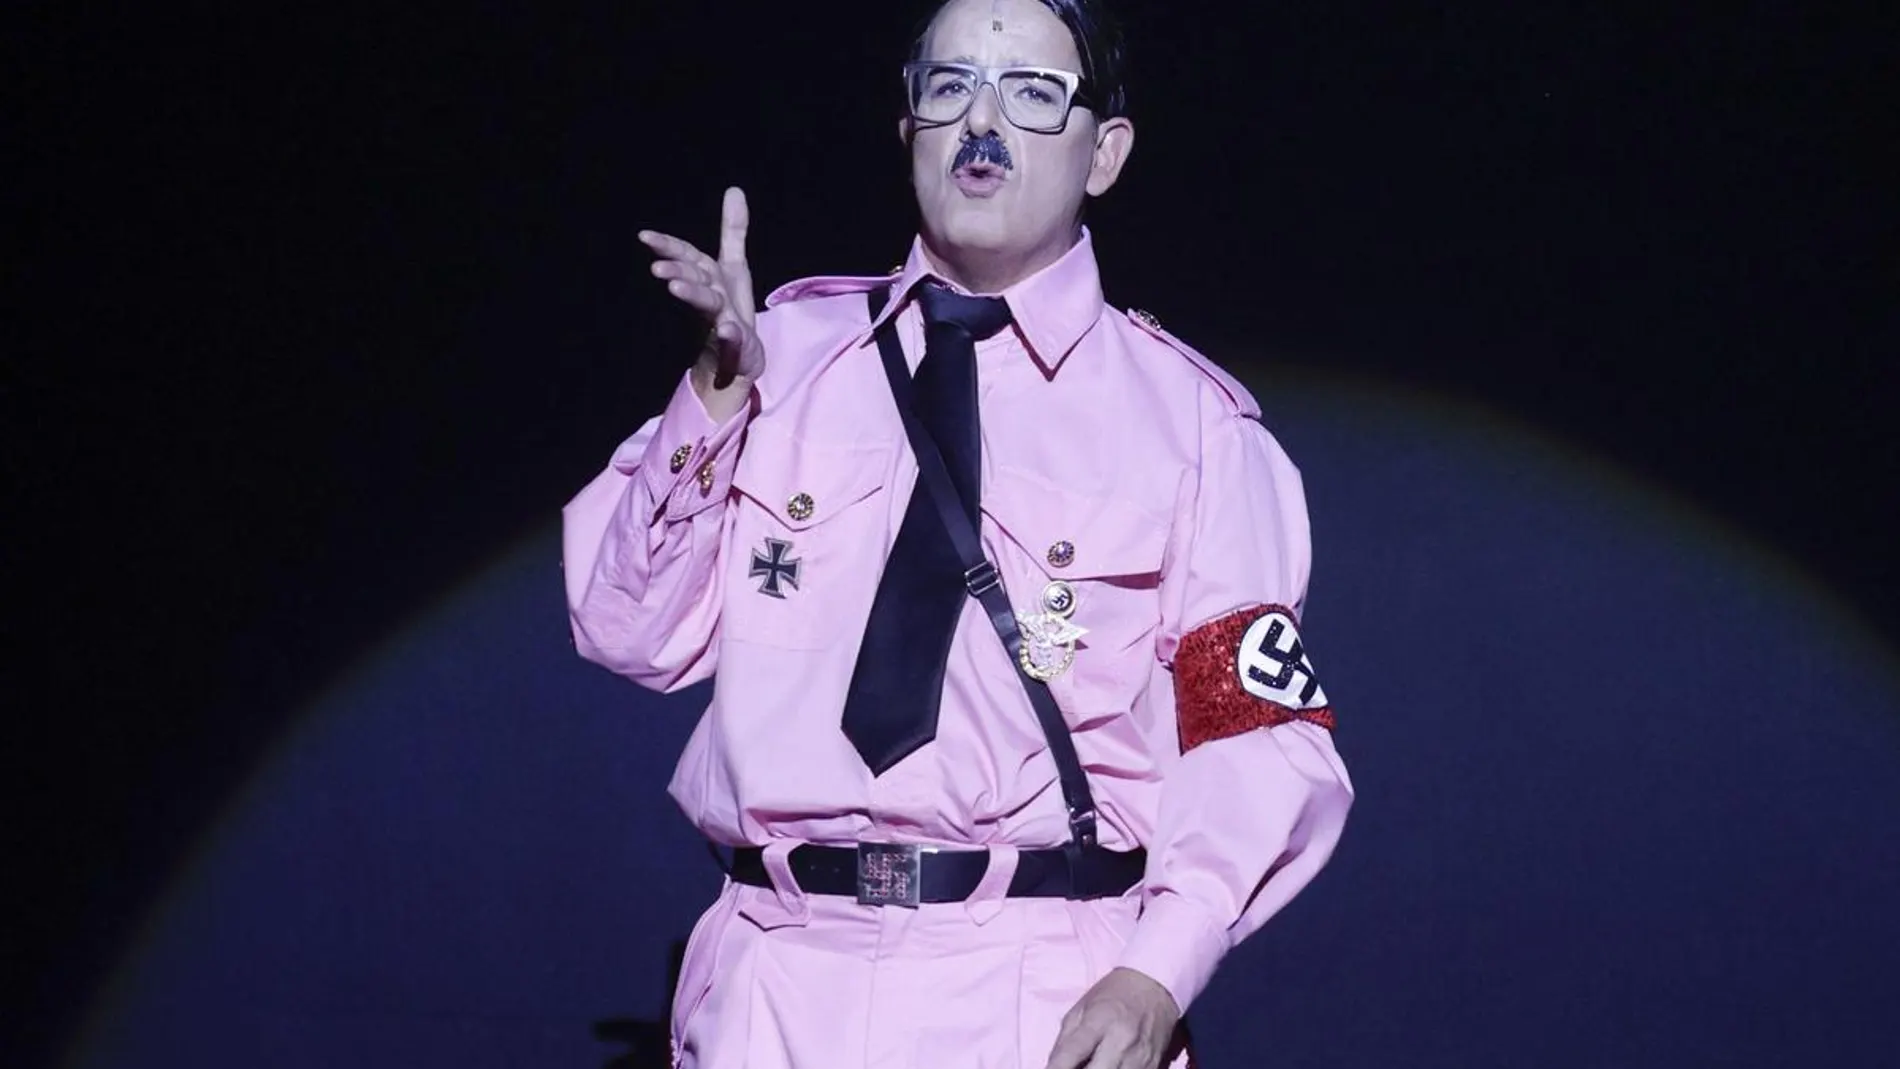 Àngel Llàcer caracterizado como Hitler en "The Producers"